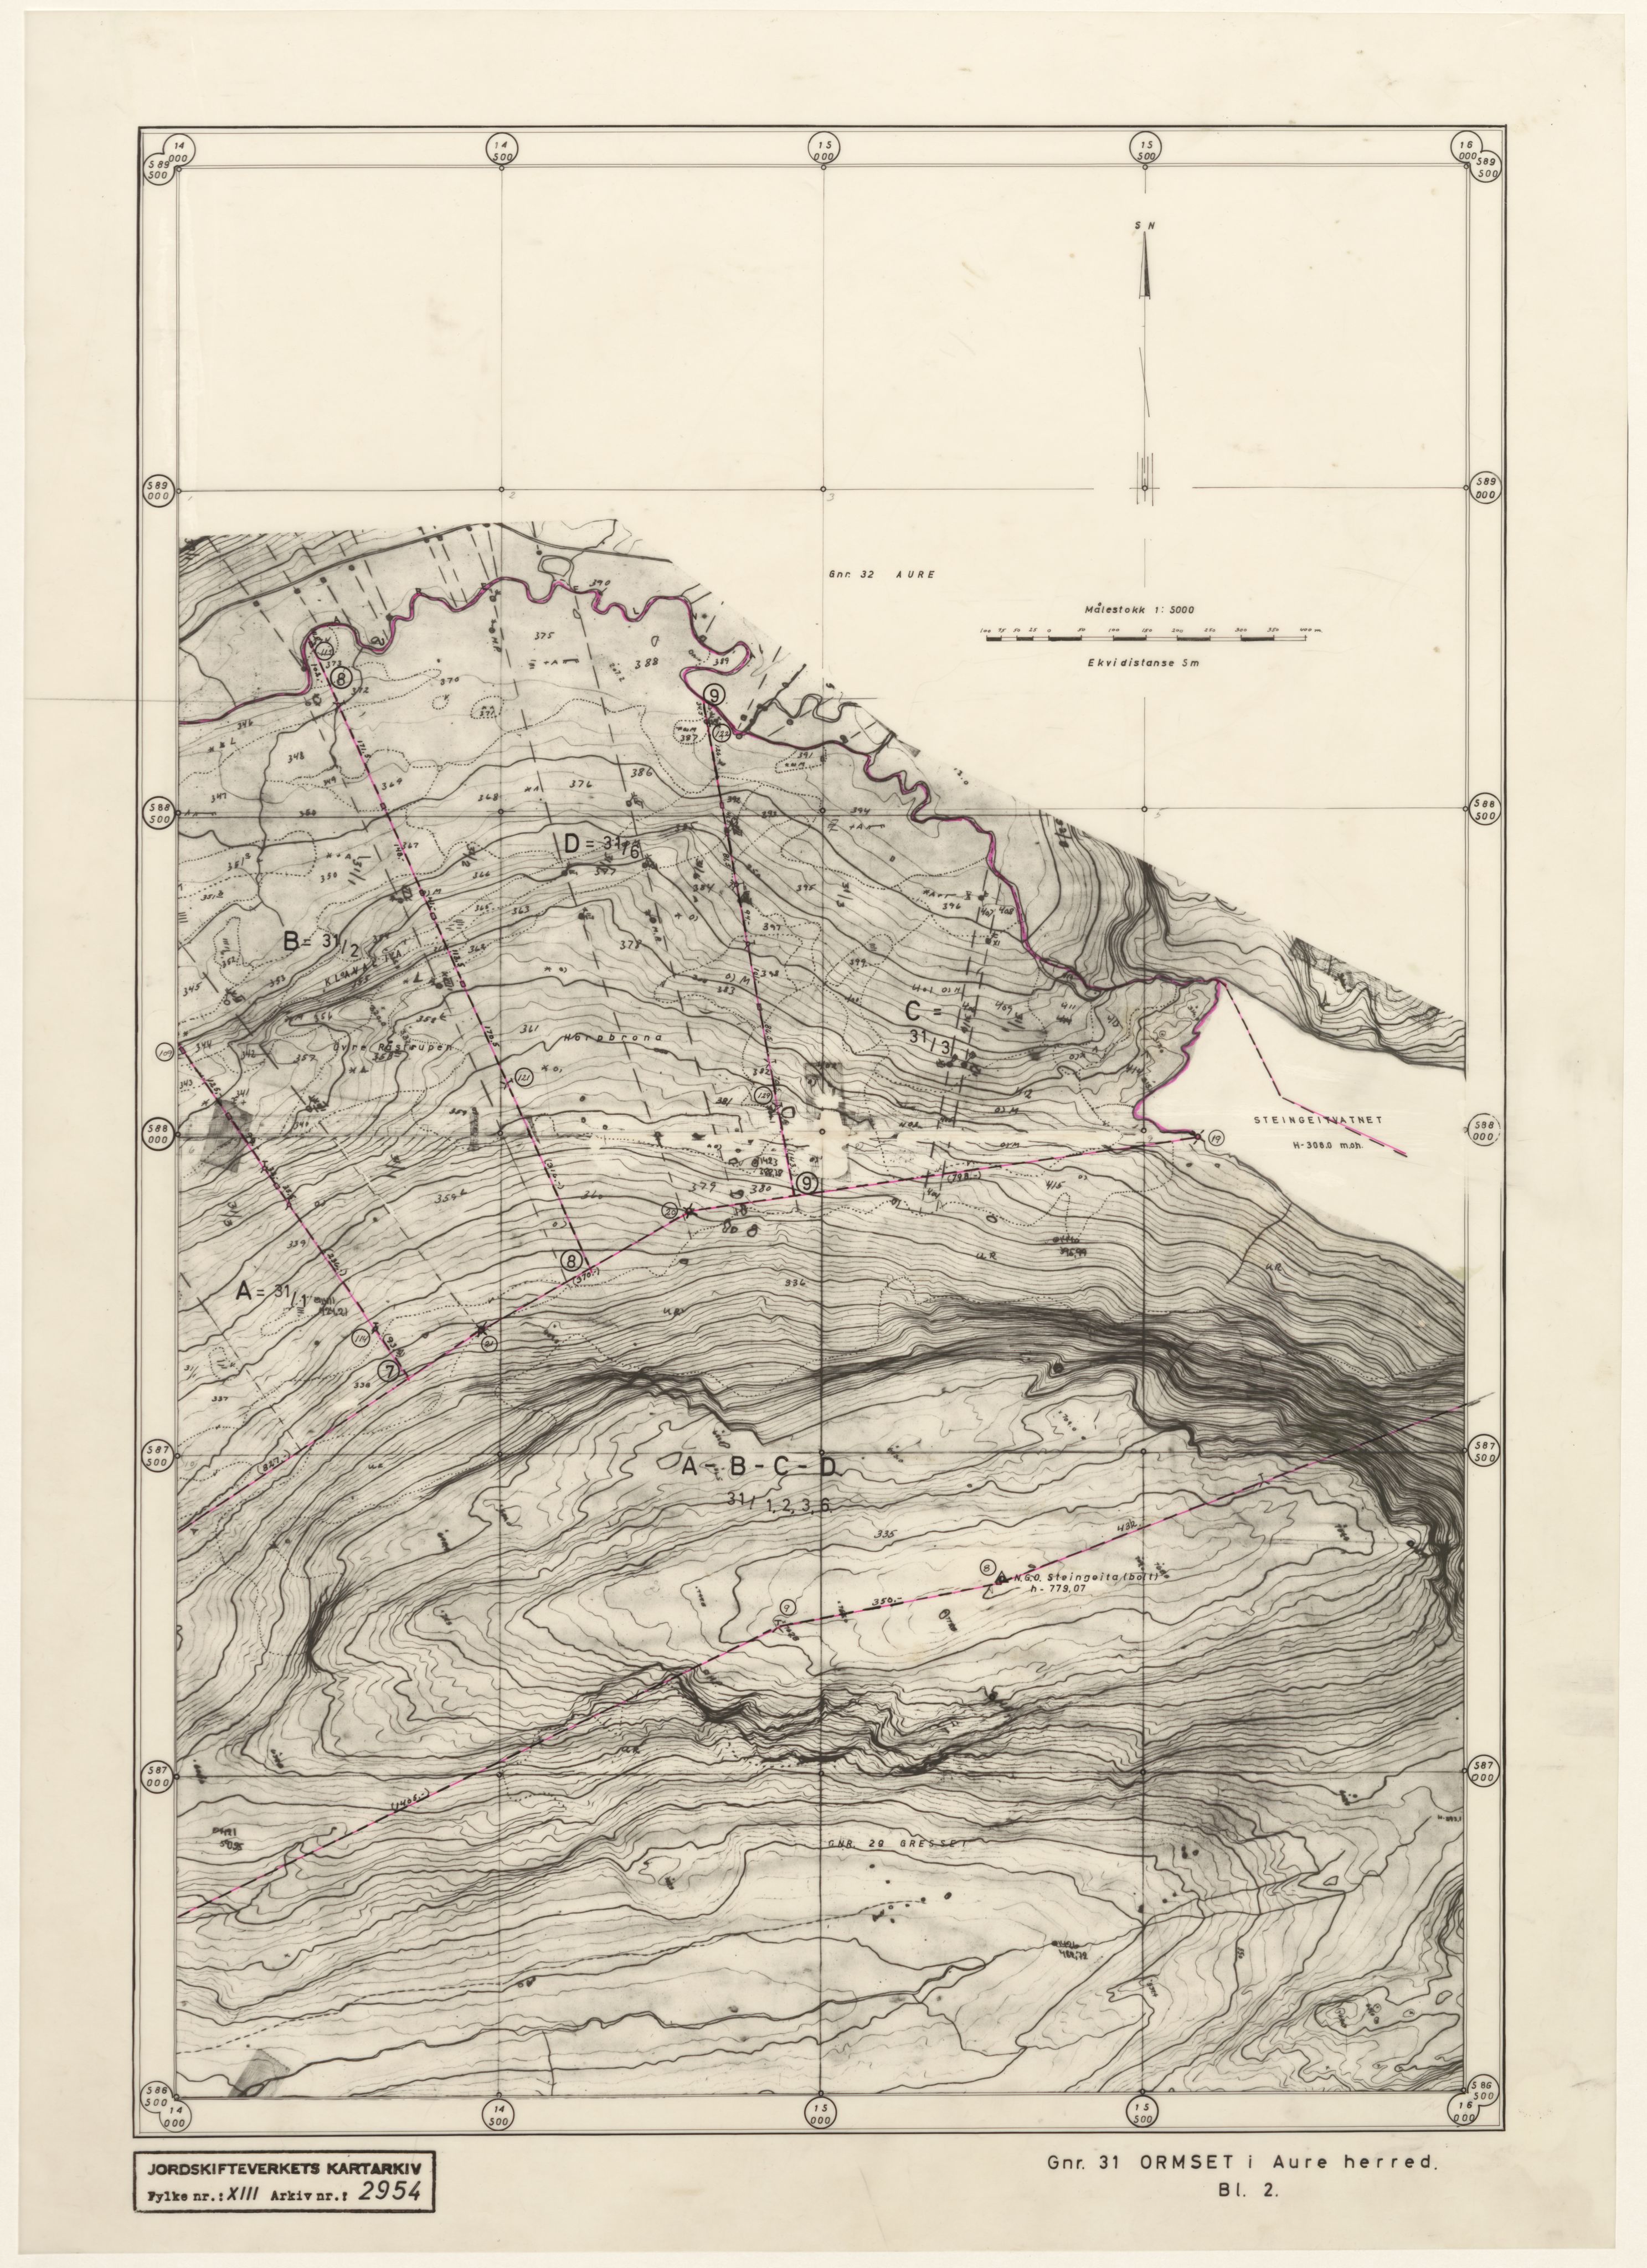 Jordskifteverkets kartarkiv, RA/S-3929/T, 1859-1988, s. 3730